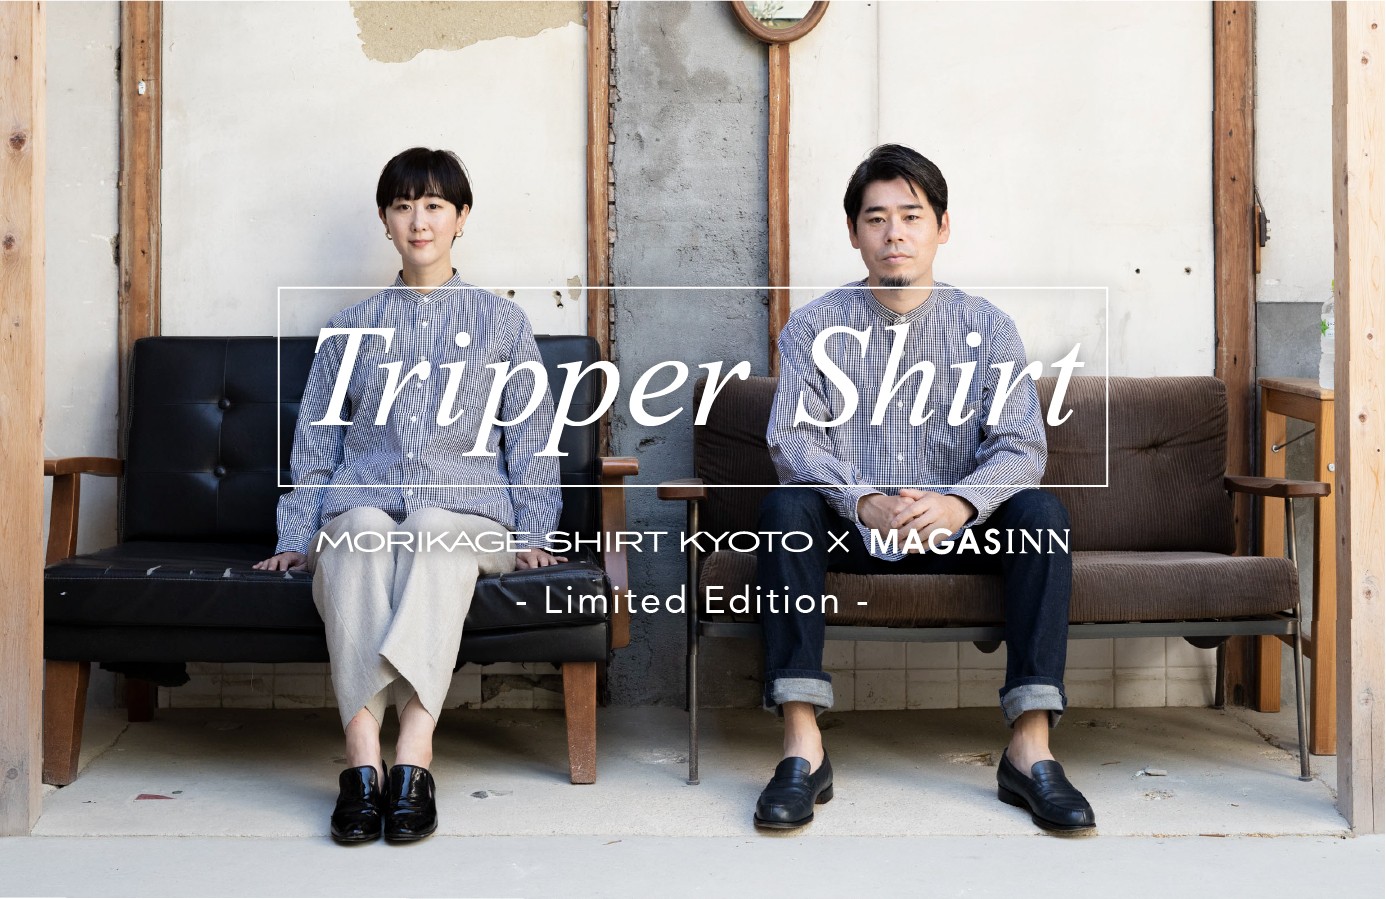 宿屋が考えた 旅で着たいシャツ モリカゲシャツと Tripper Shirt をつくりました Magasinn Kyoto マガザンキョウト